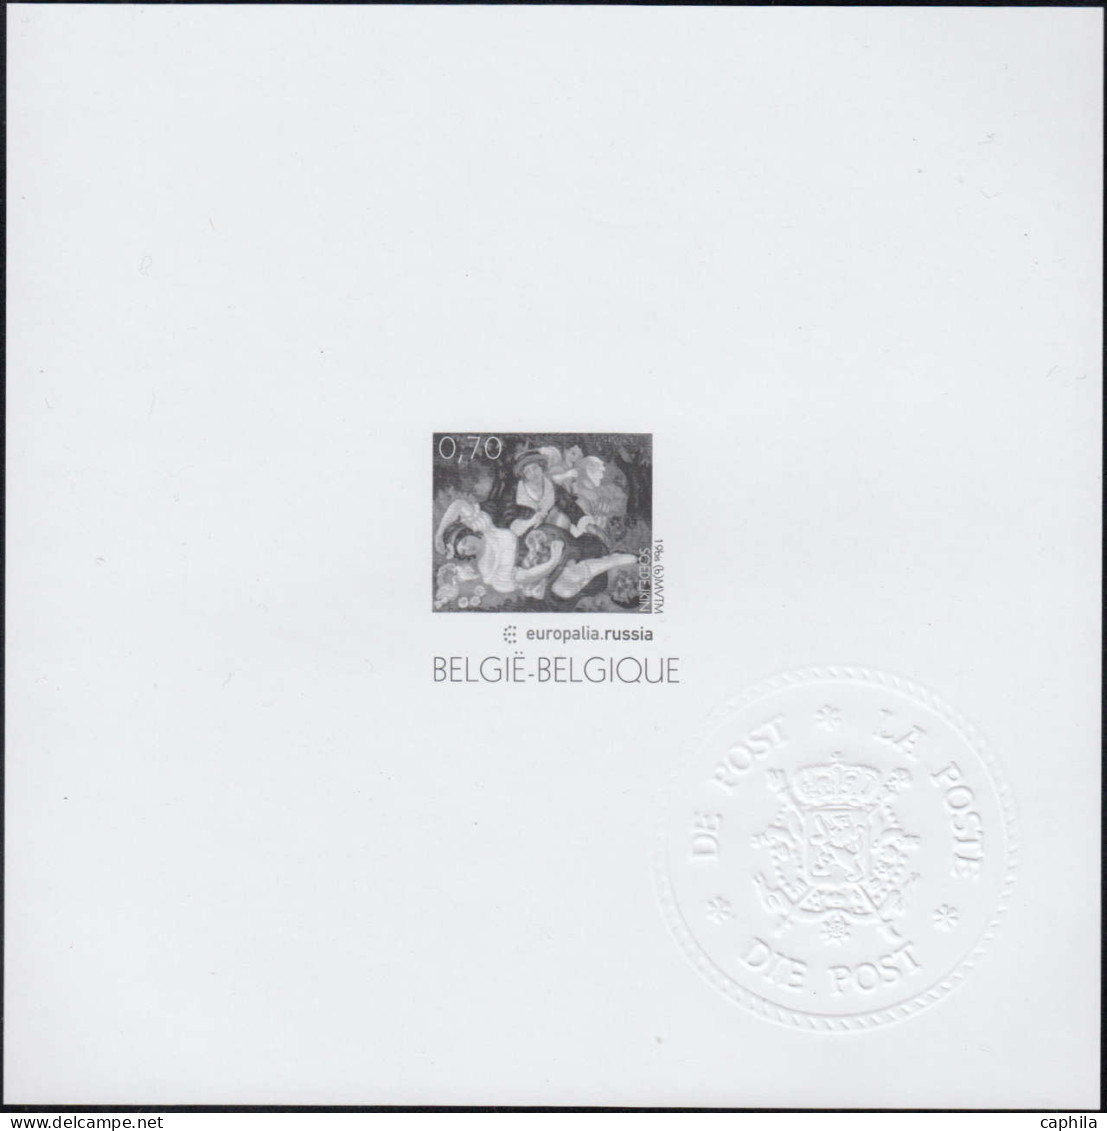 - BELGIQUE FEUILLETS MINISTERIELS, 1953/2007 (type MV/FM), en album, cote COB: 12200 €